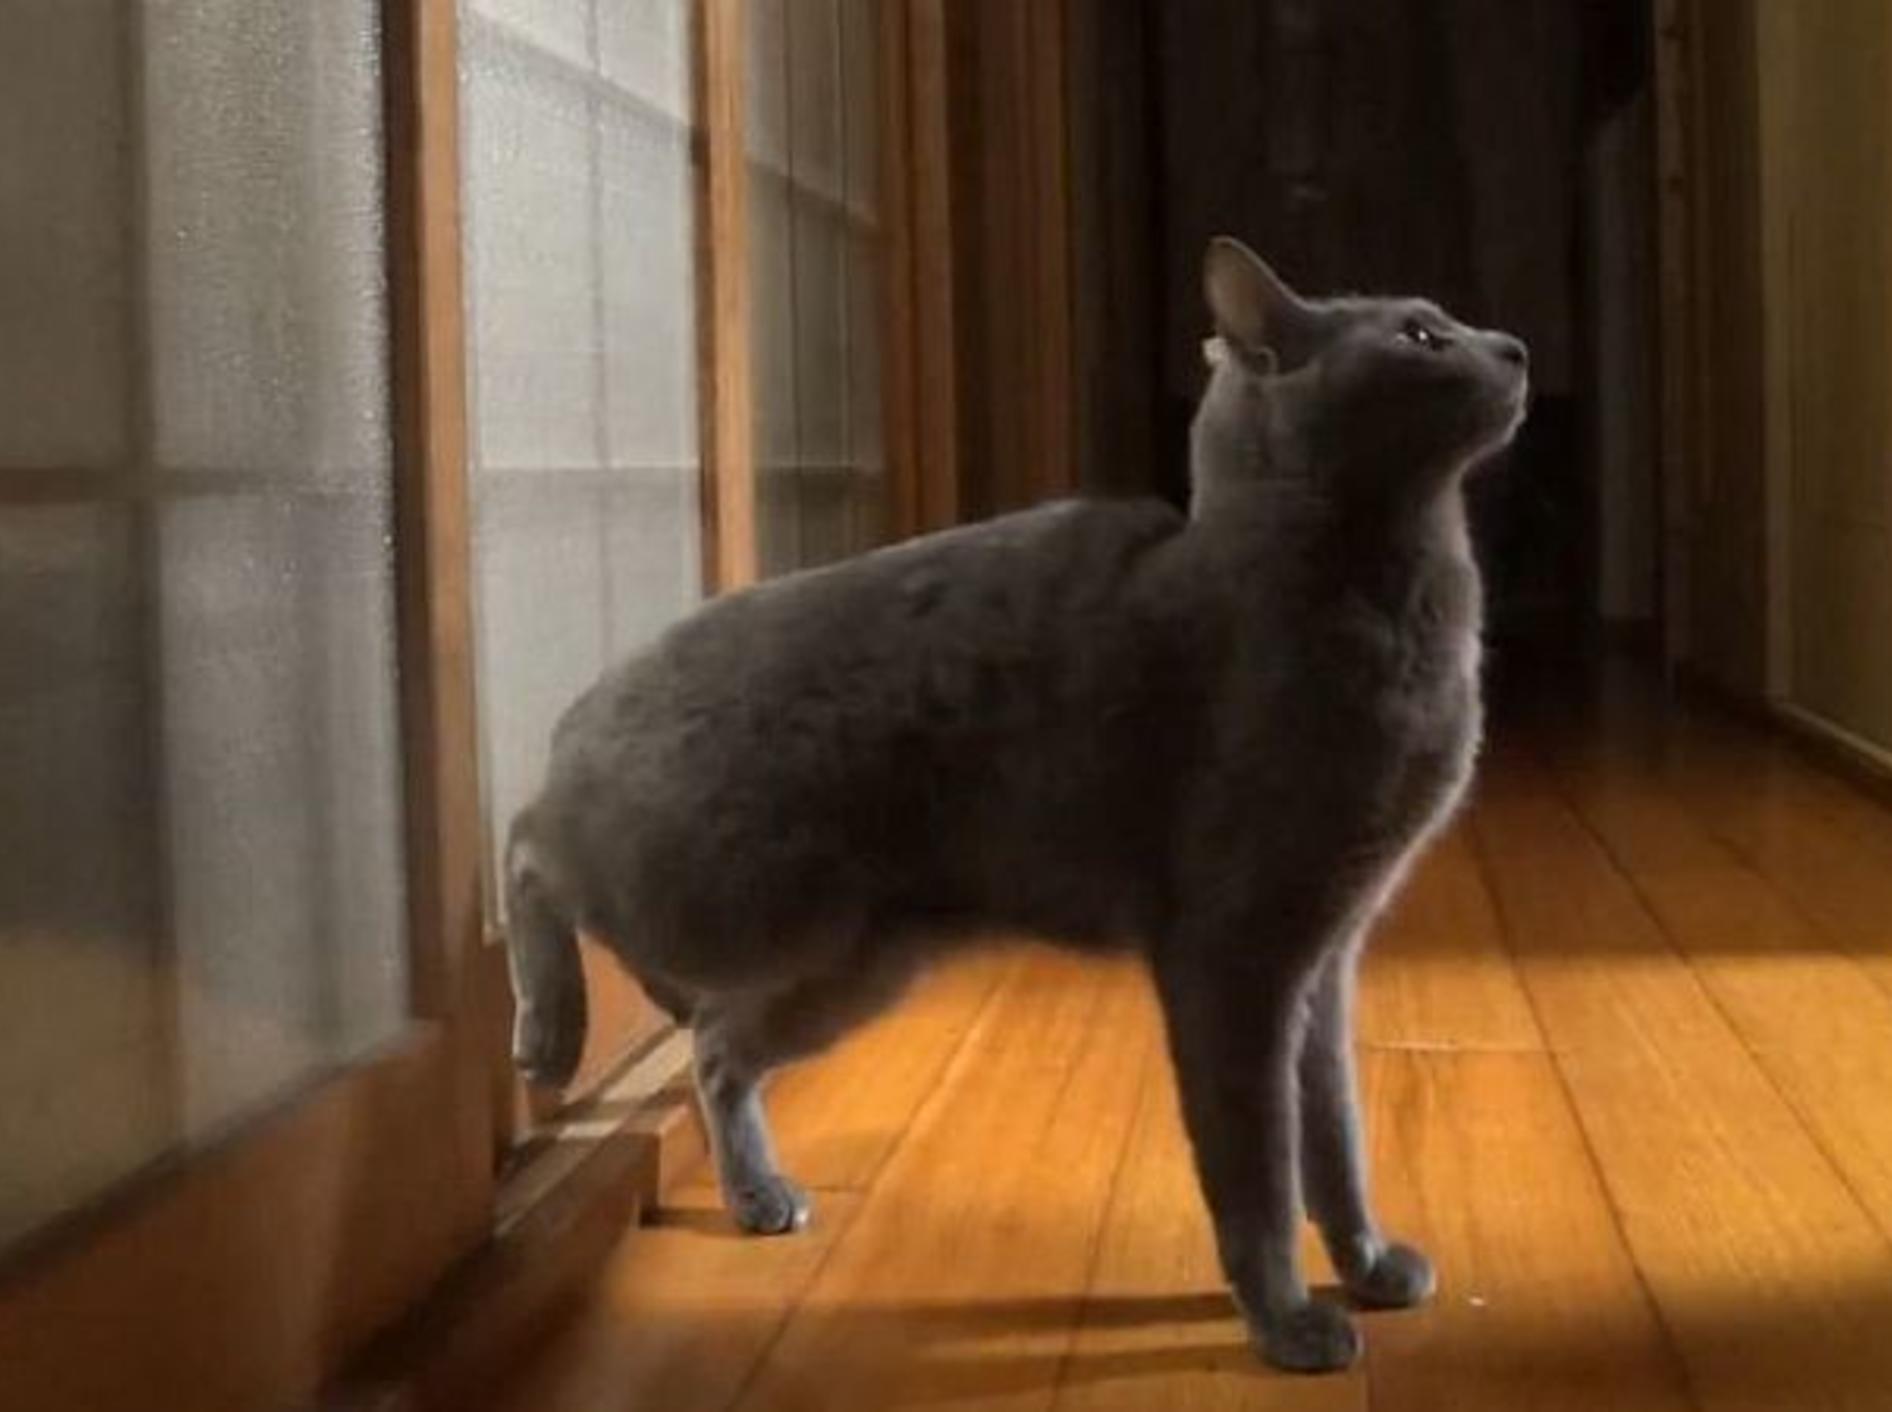 Katze klopft mit Hinterpfoten gegen Tuer – Bild: Youtube / SummerAlcorn